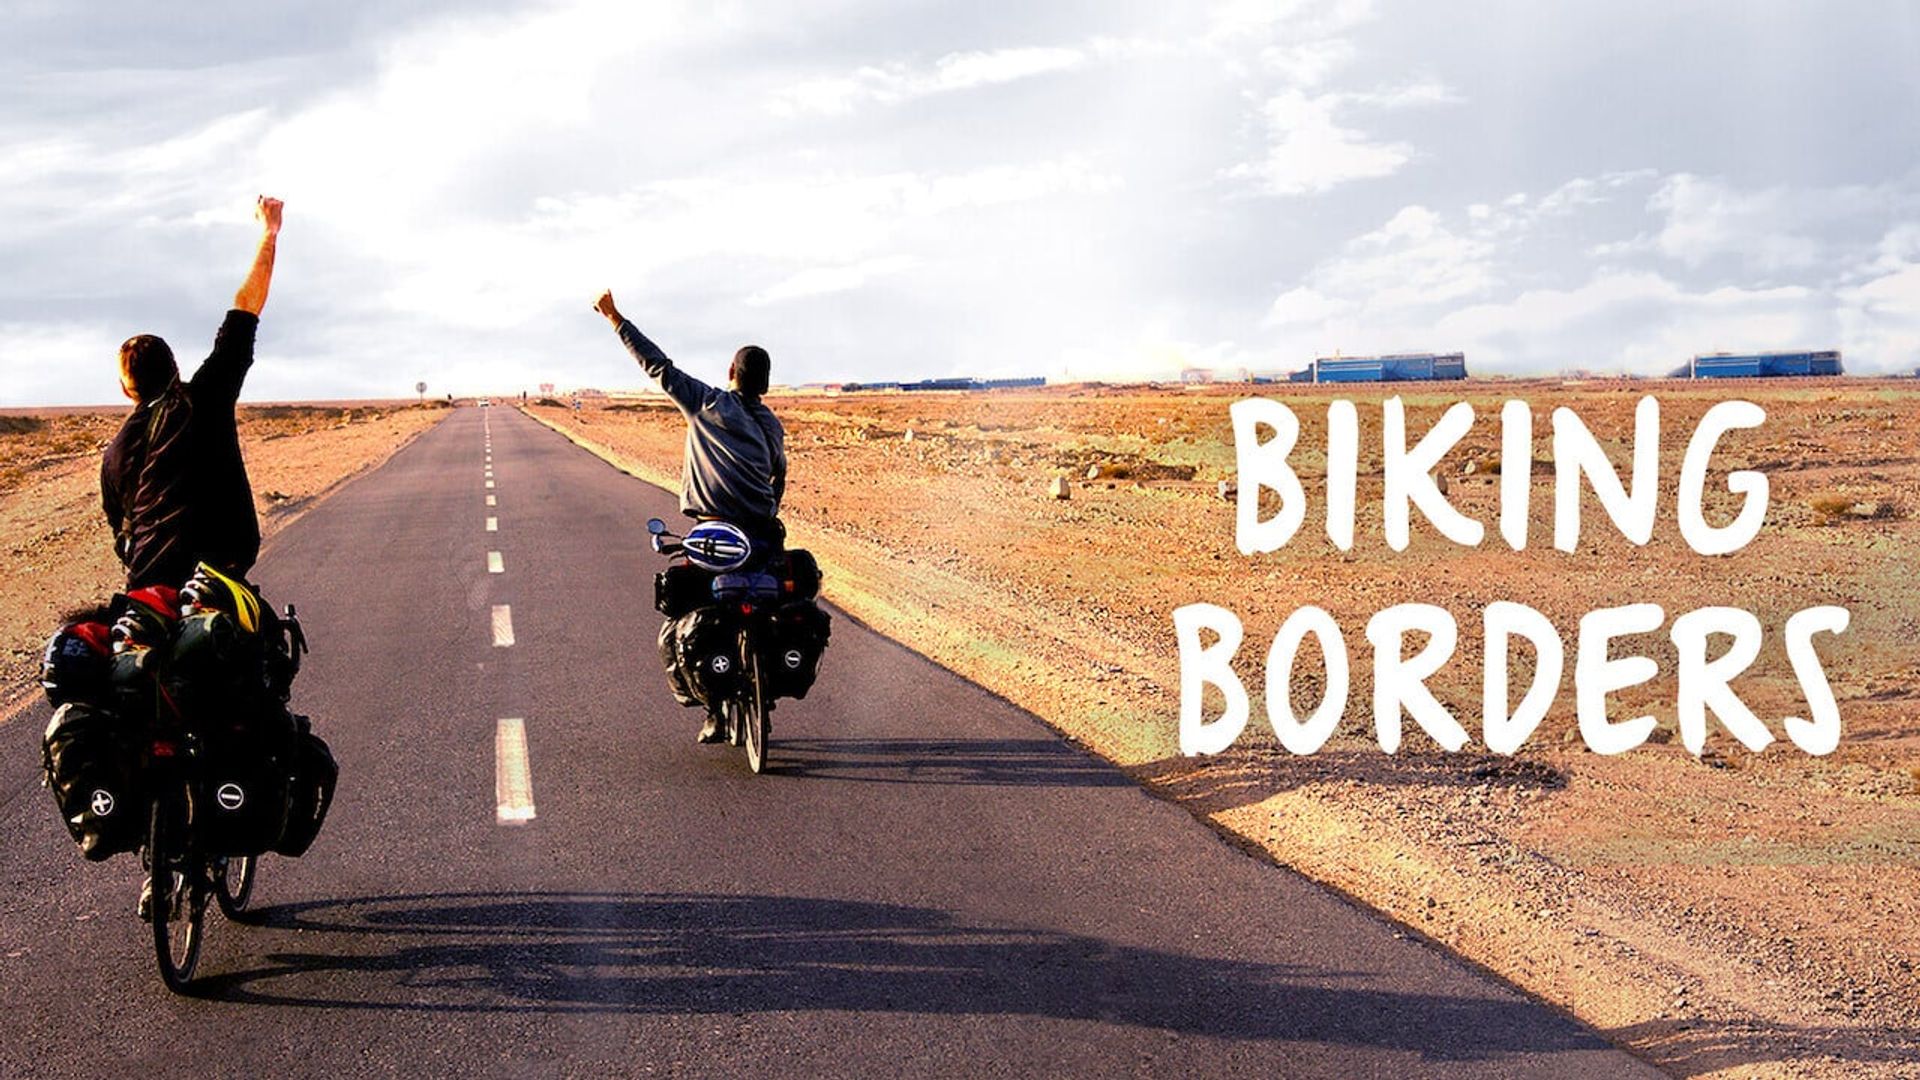 Biking Borders background